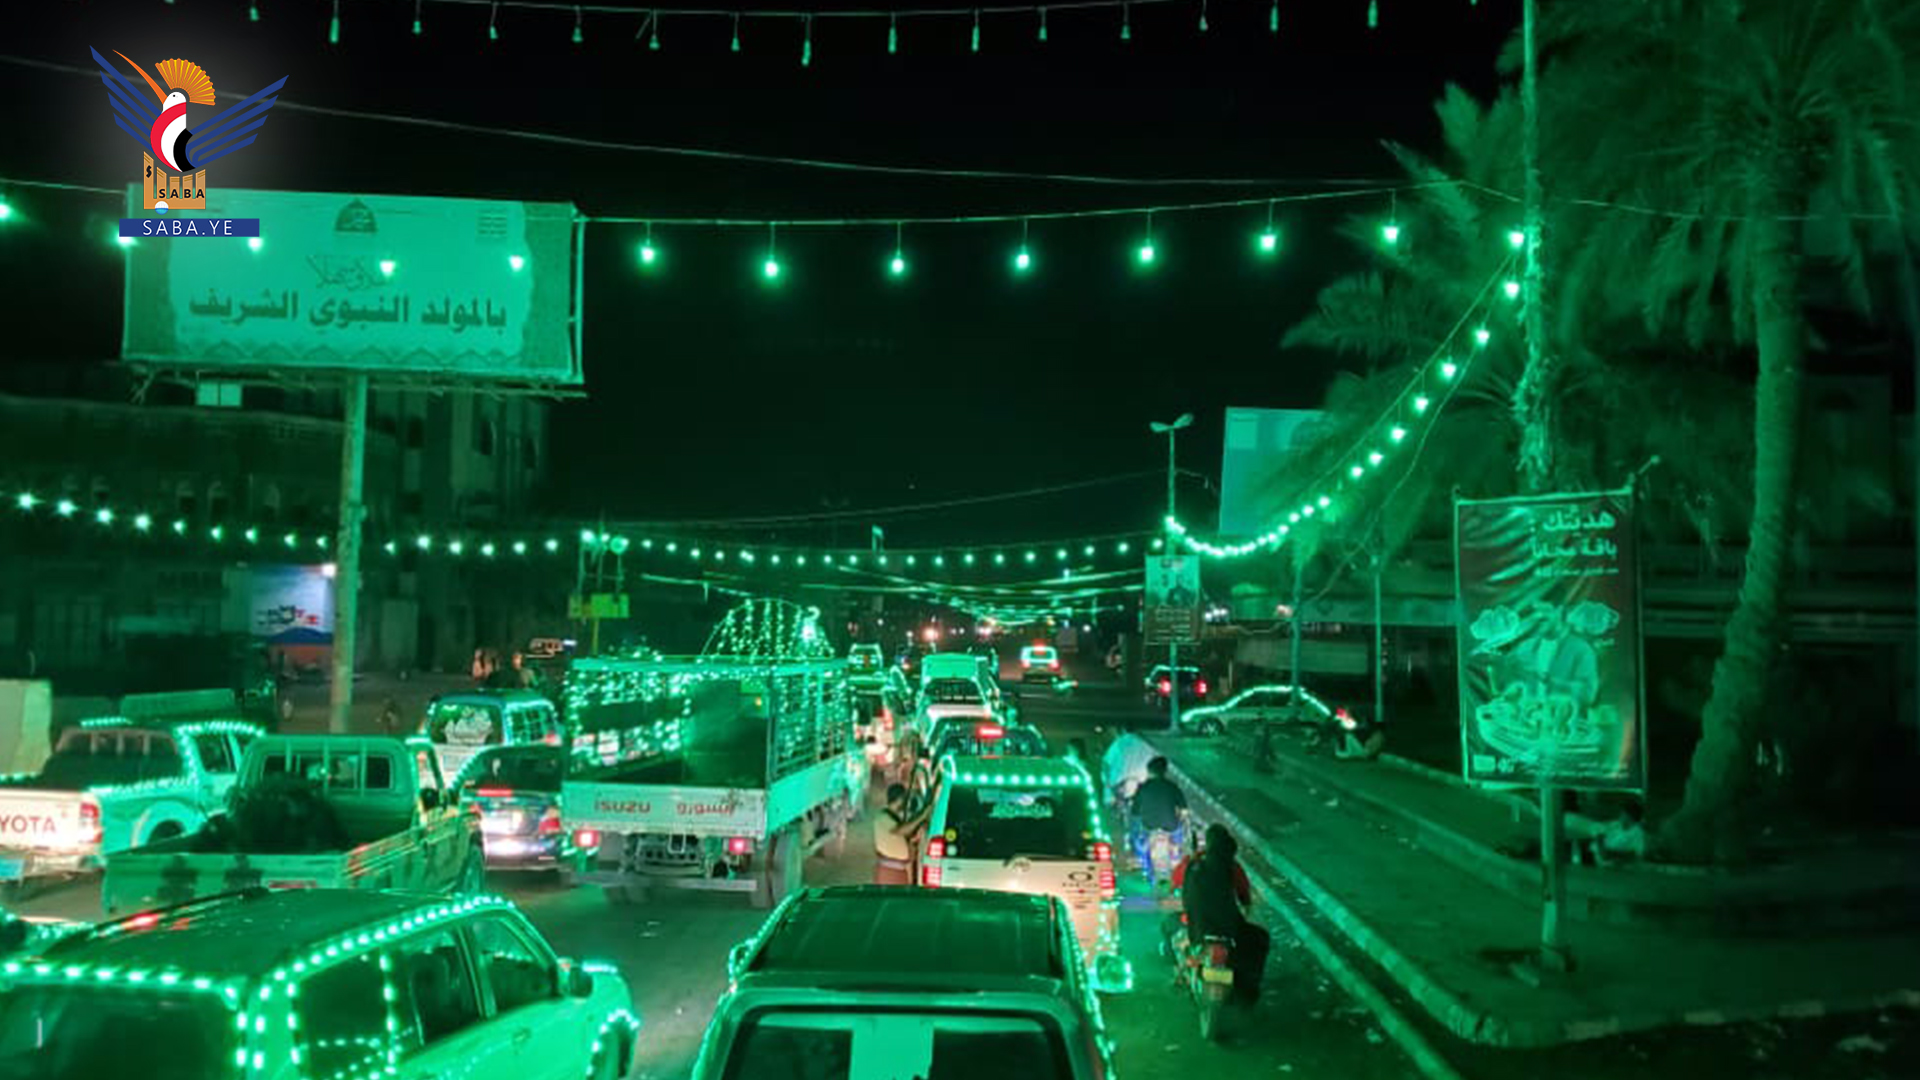 مئات السيارات والدراجات المضيئة بالأنوار المحمدية تجوب شوارع الحديدة